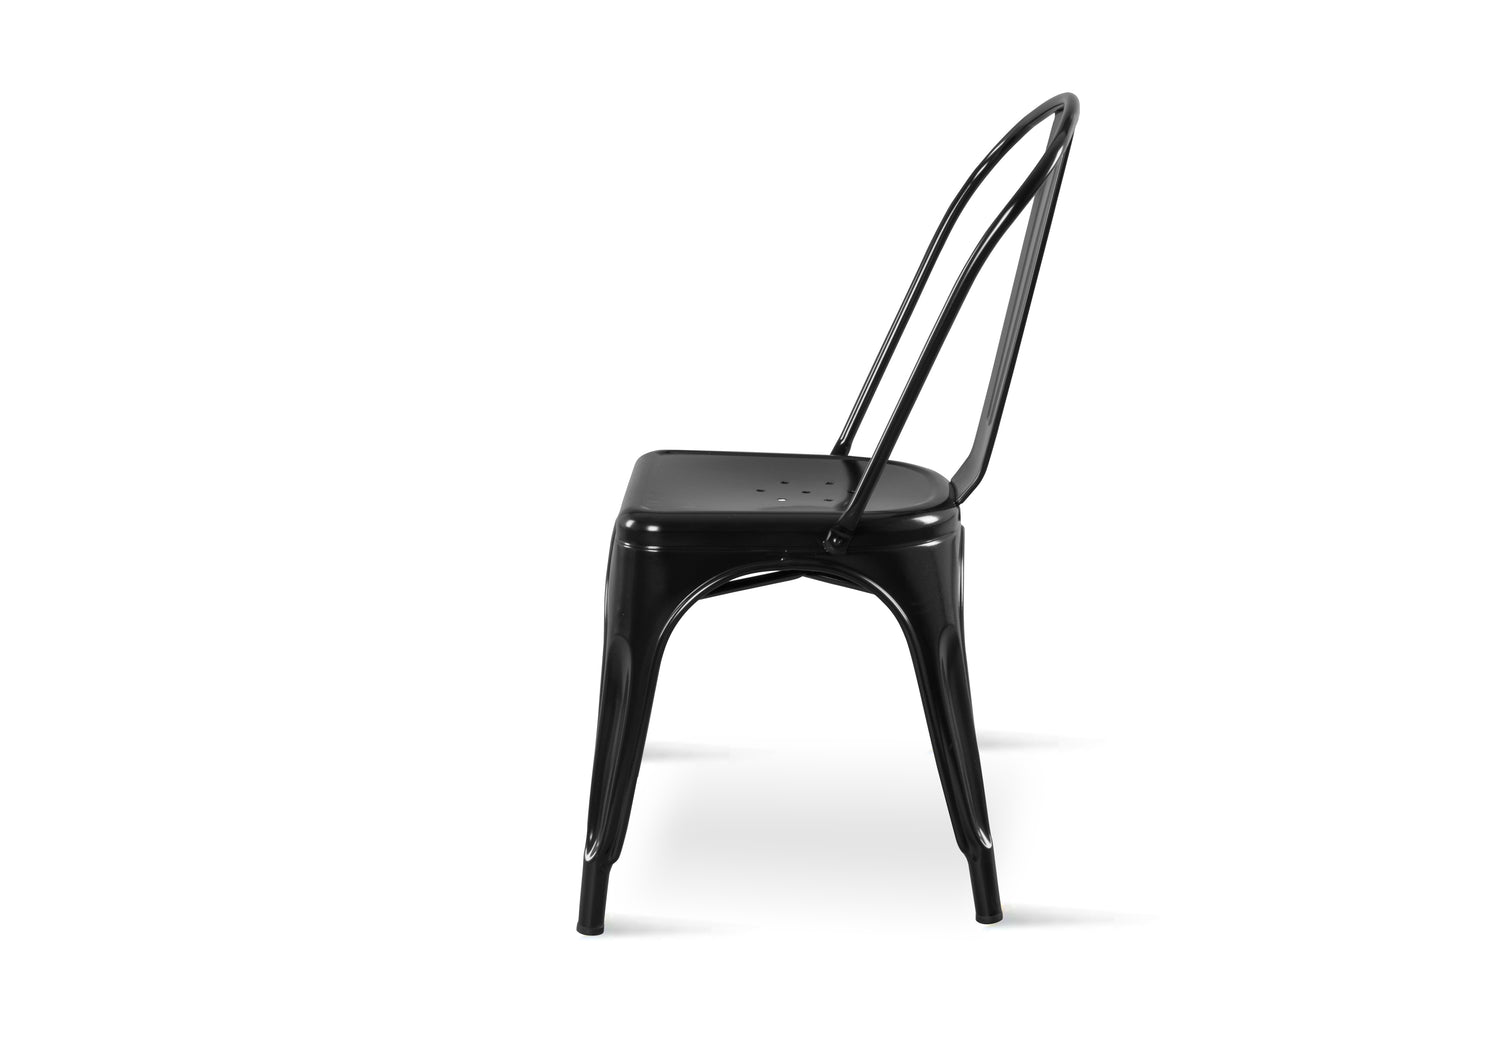 KOSMI - Lot de 4 Chaises en métal noir mat et assise bois clair –